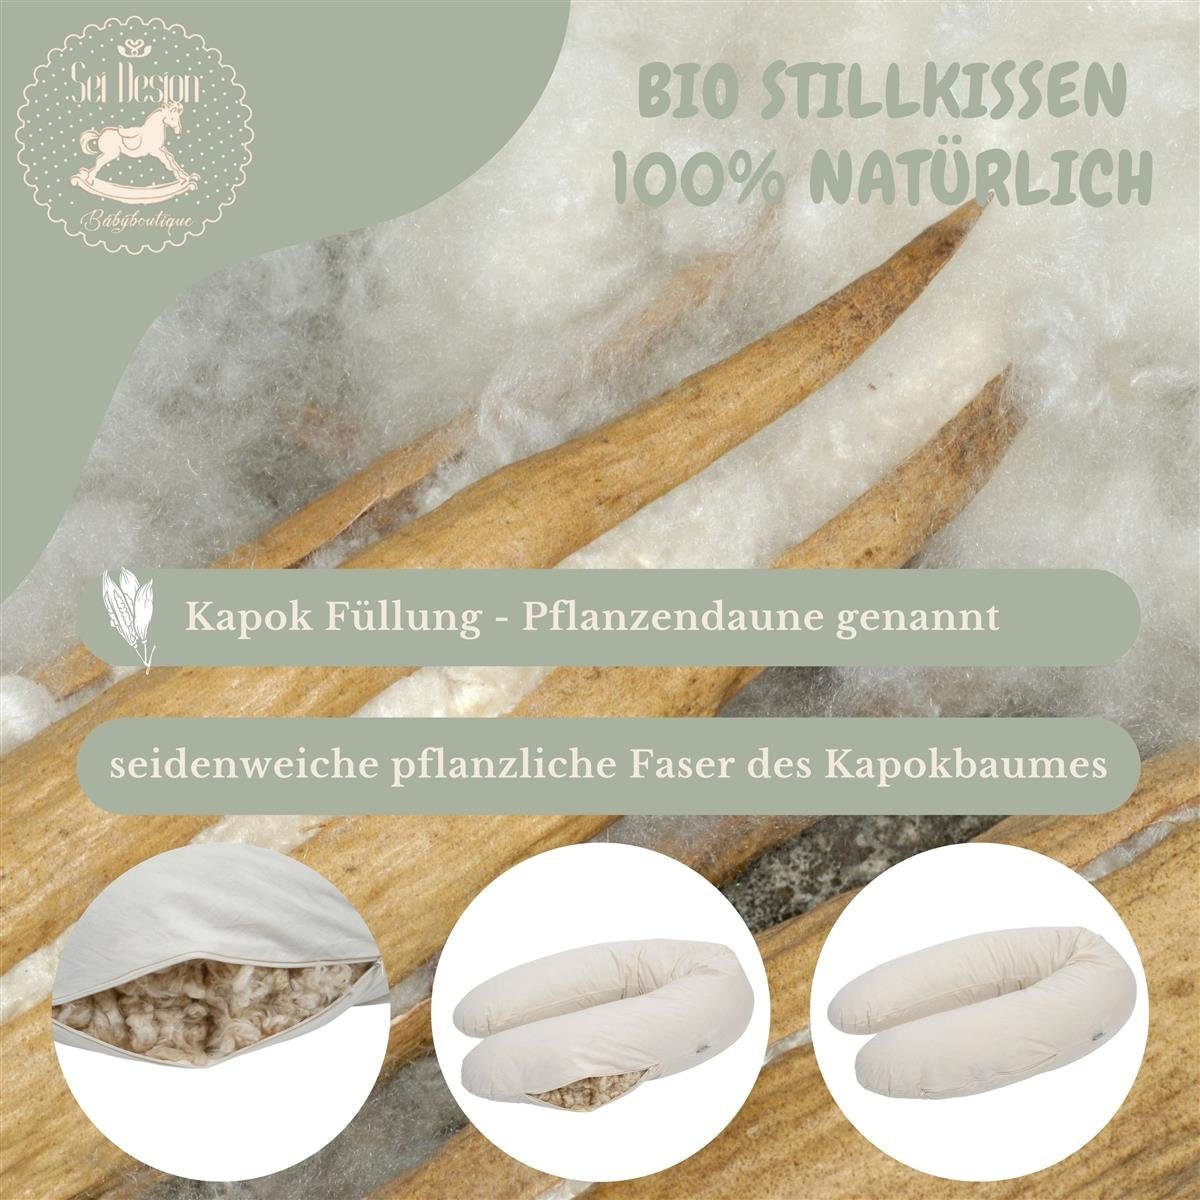 BIO-Stillkissen + Kissen Kapok 190x30 Baumwolle BIO Mint Stillkissen Design Dark Bezug, Naturstillkissen + SEI cm,